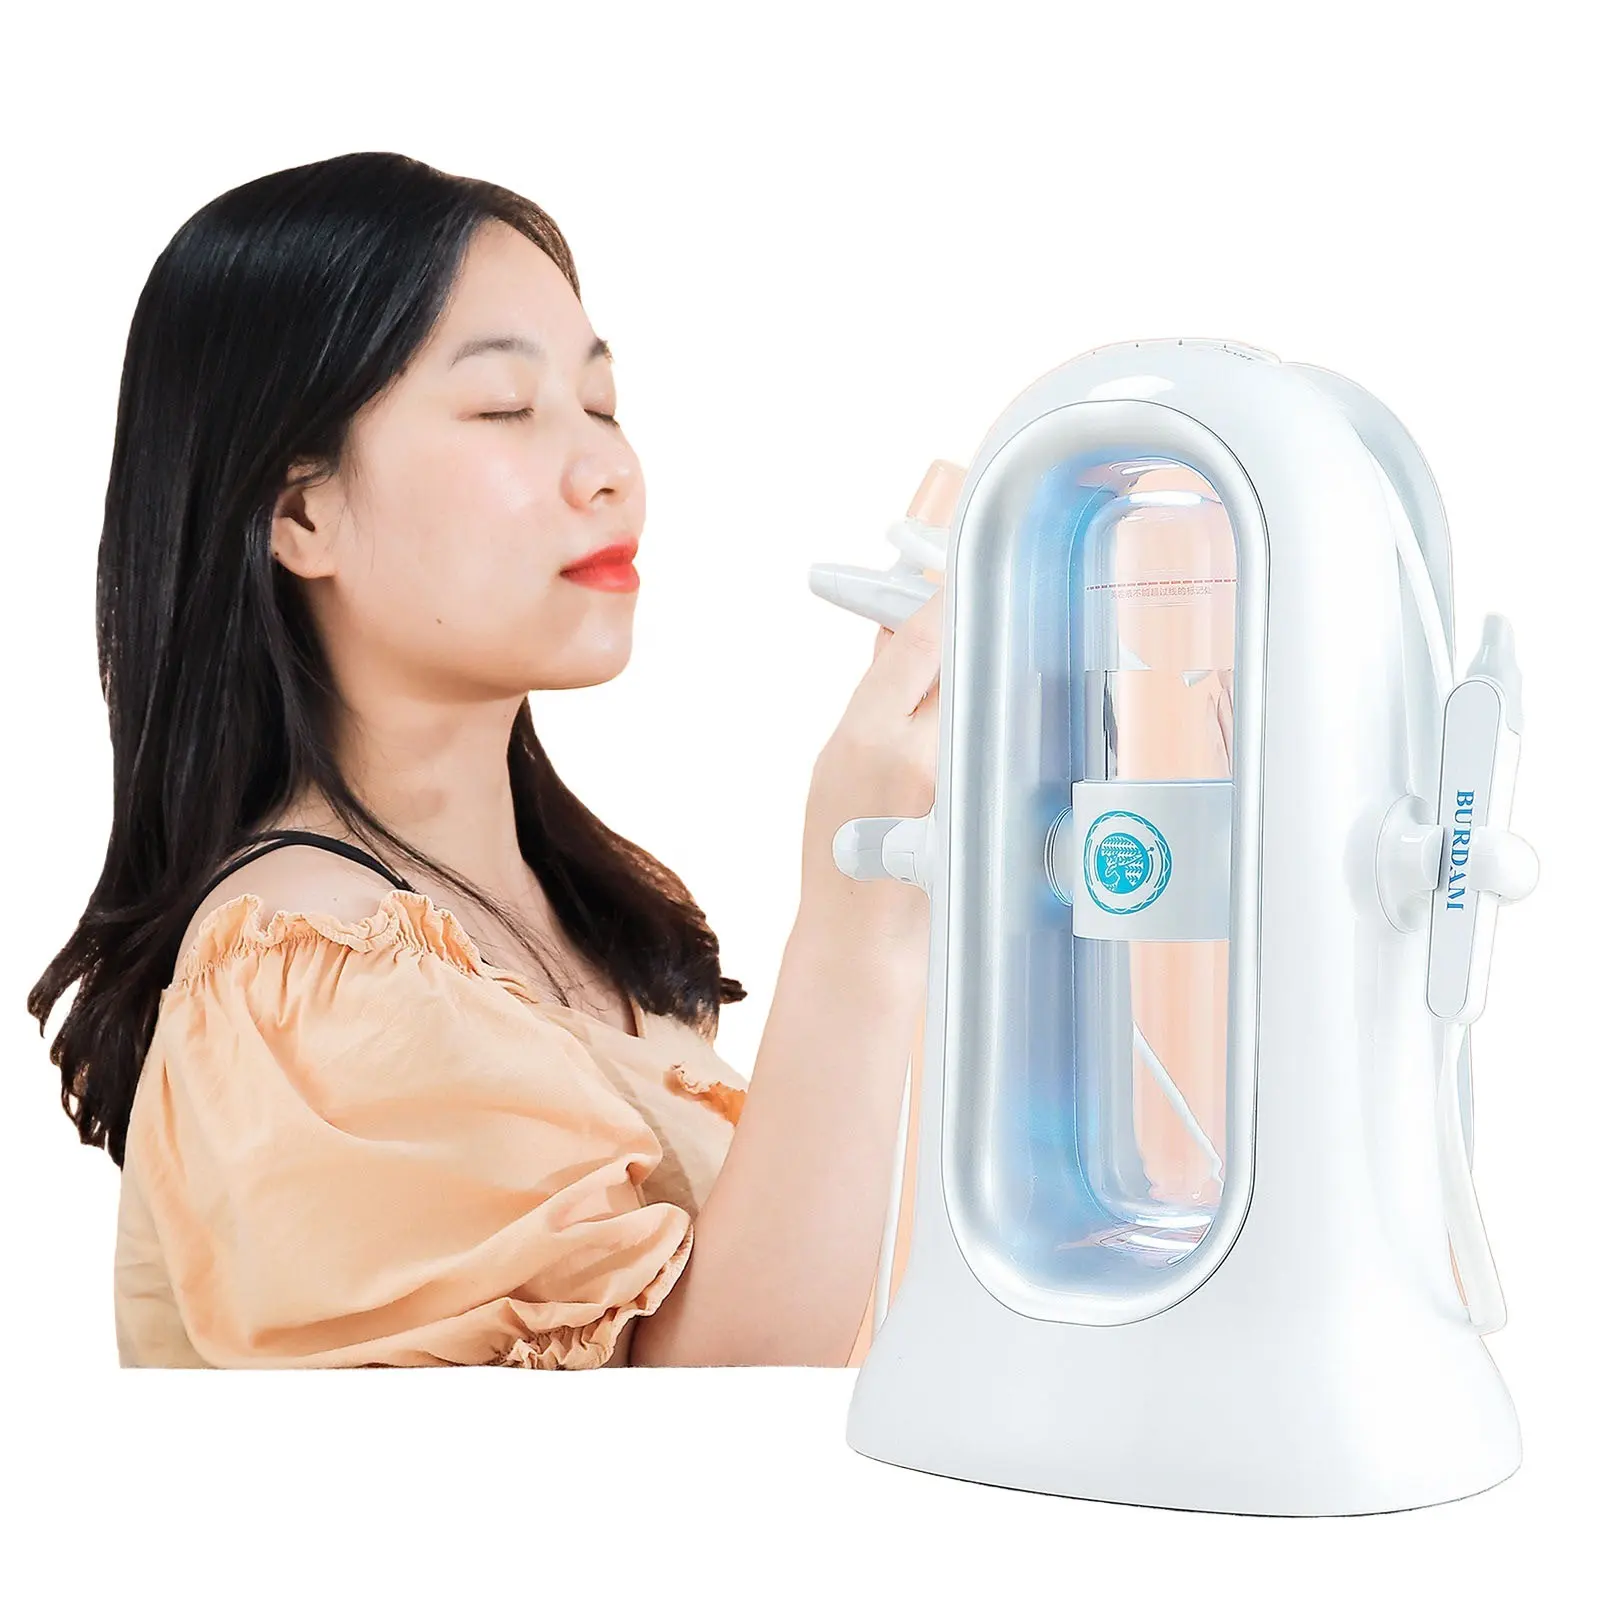 Aquasure-máquina de belleza 4 en 1 H2 O2 para rejuvenecimiento de la piel, rejuvenecimiento de la piel con CE